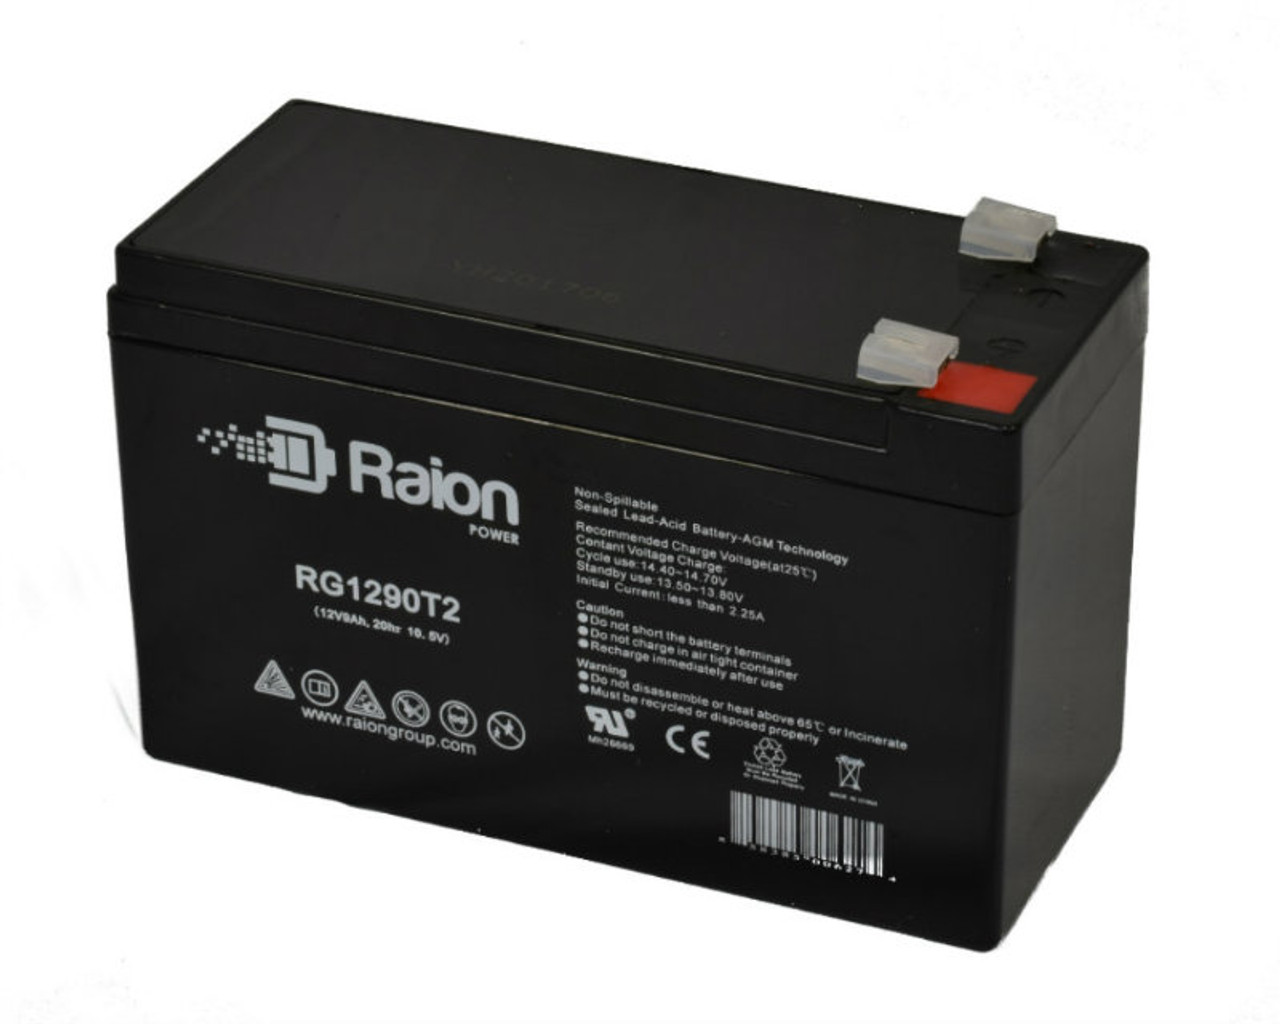 Raion Power RG1290T2 12V 9Ah AGM Battery for Alpha House AH 12-9